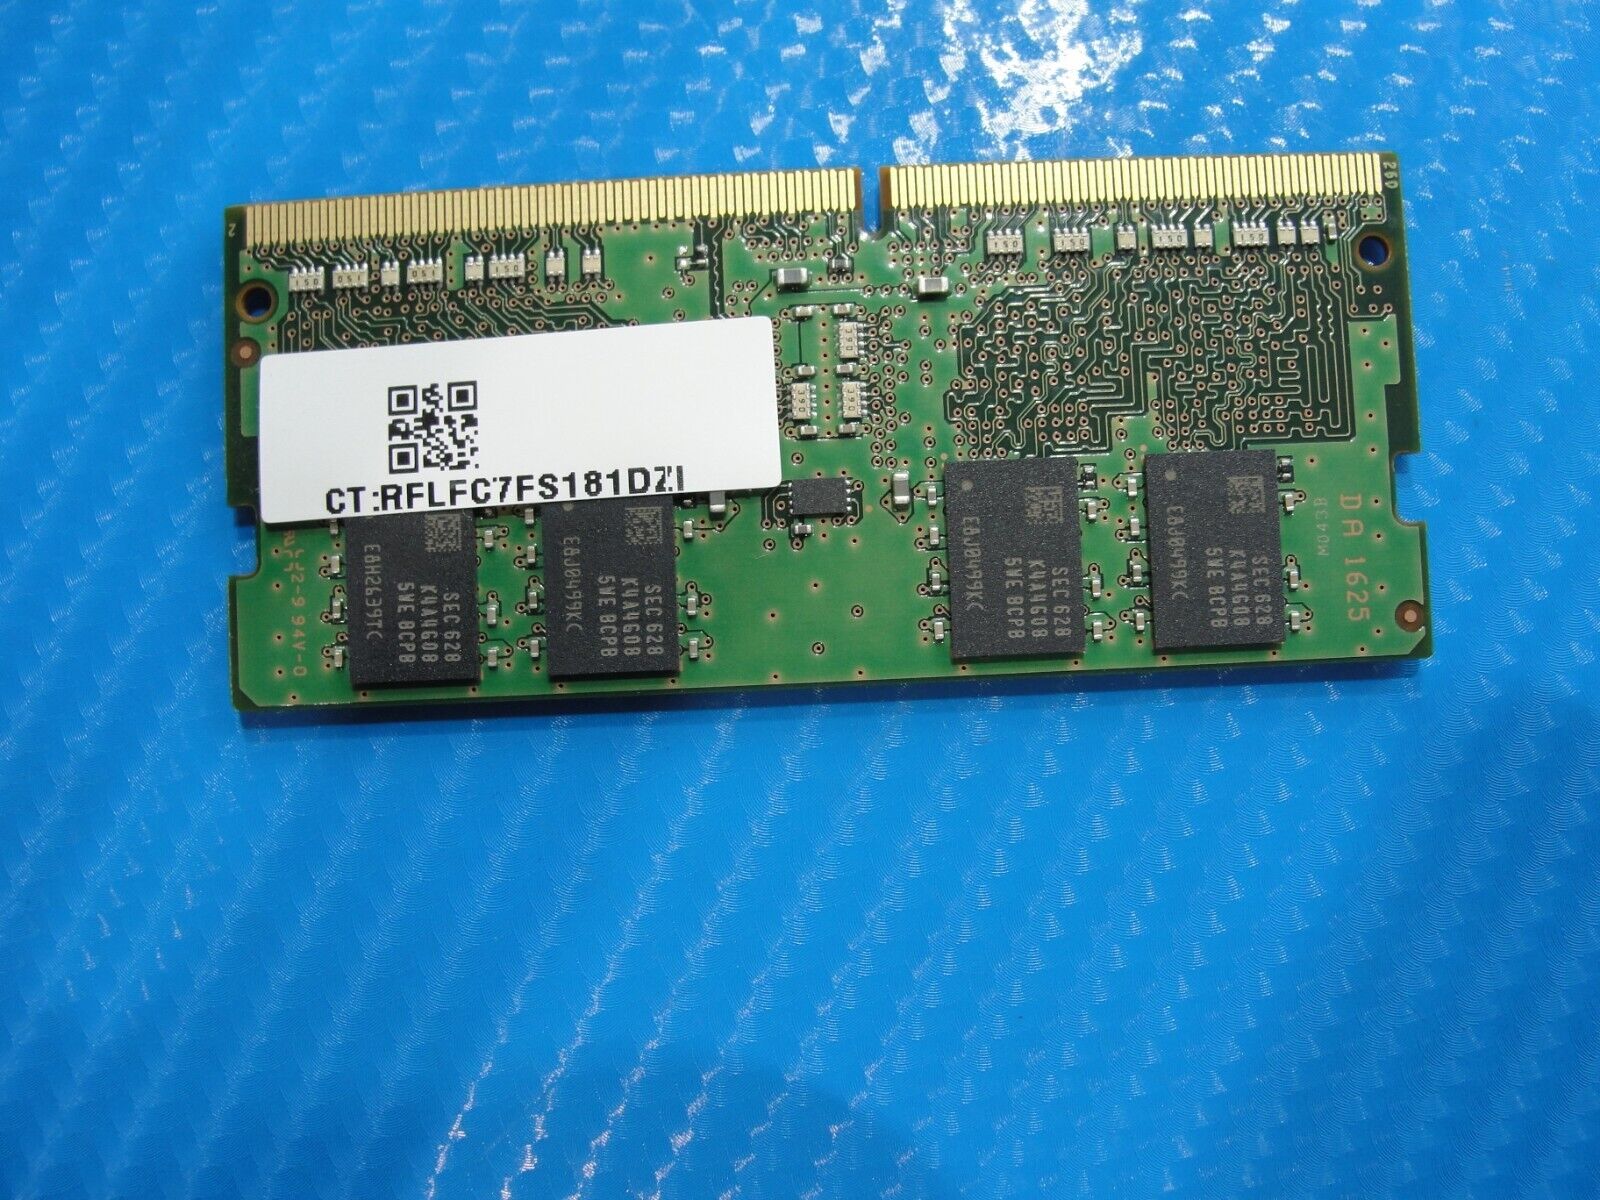 HP 15-au018wm Samsung 4Gb 1Rx8 Memory RAM So-Dimm PC4-2133P M471A5143EB0-CPB